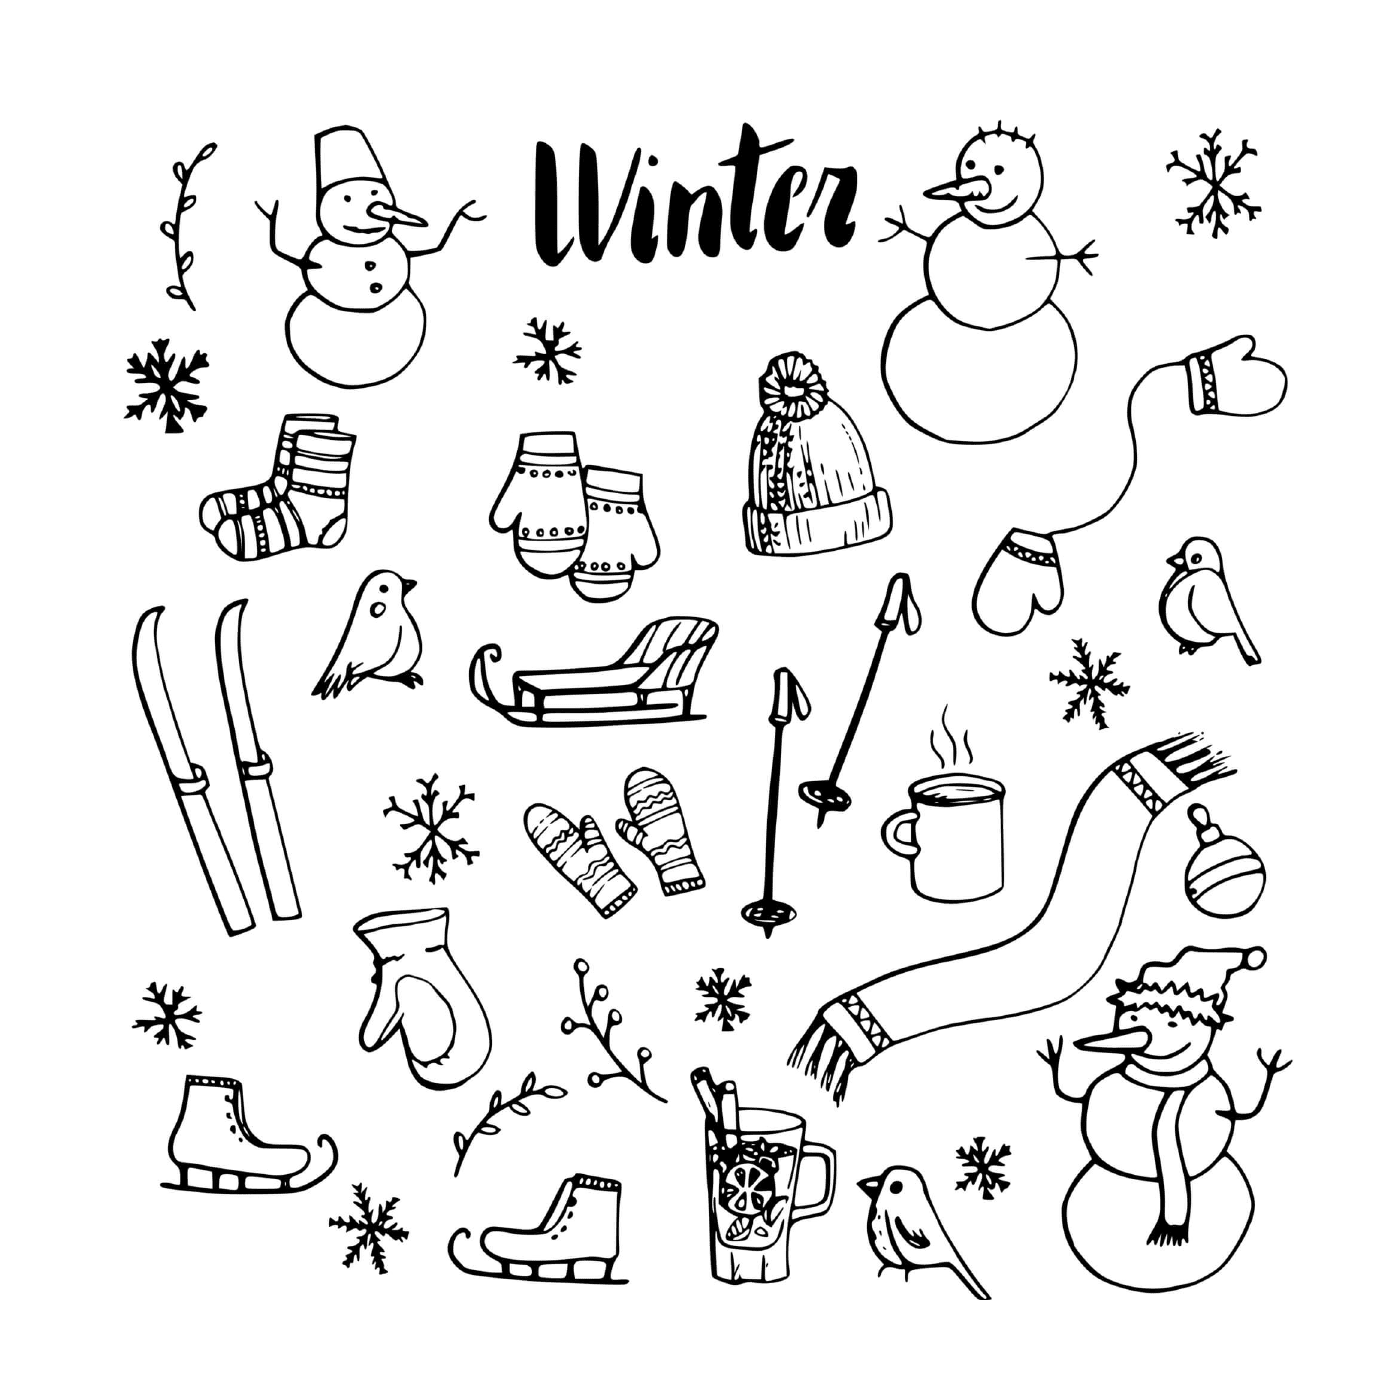  Conjunto de iconos de invierno 